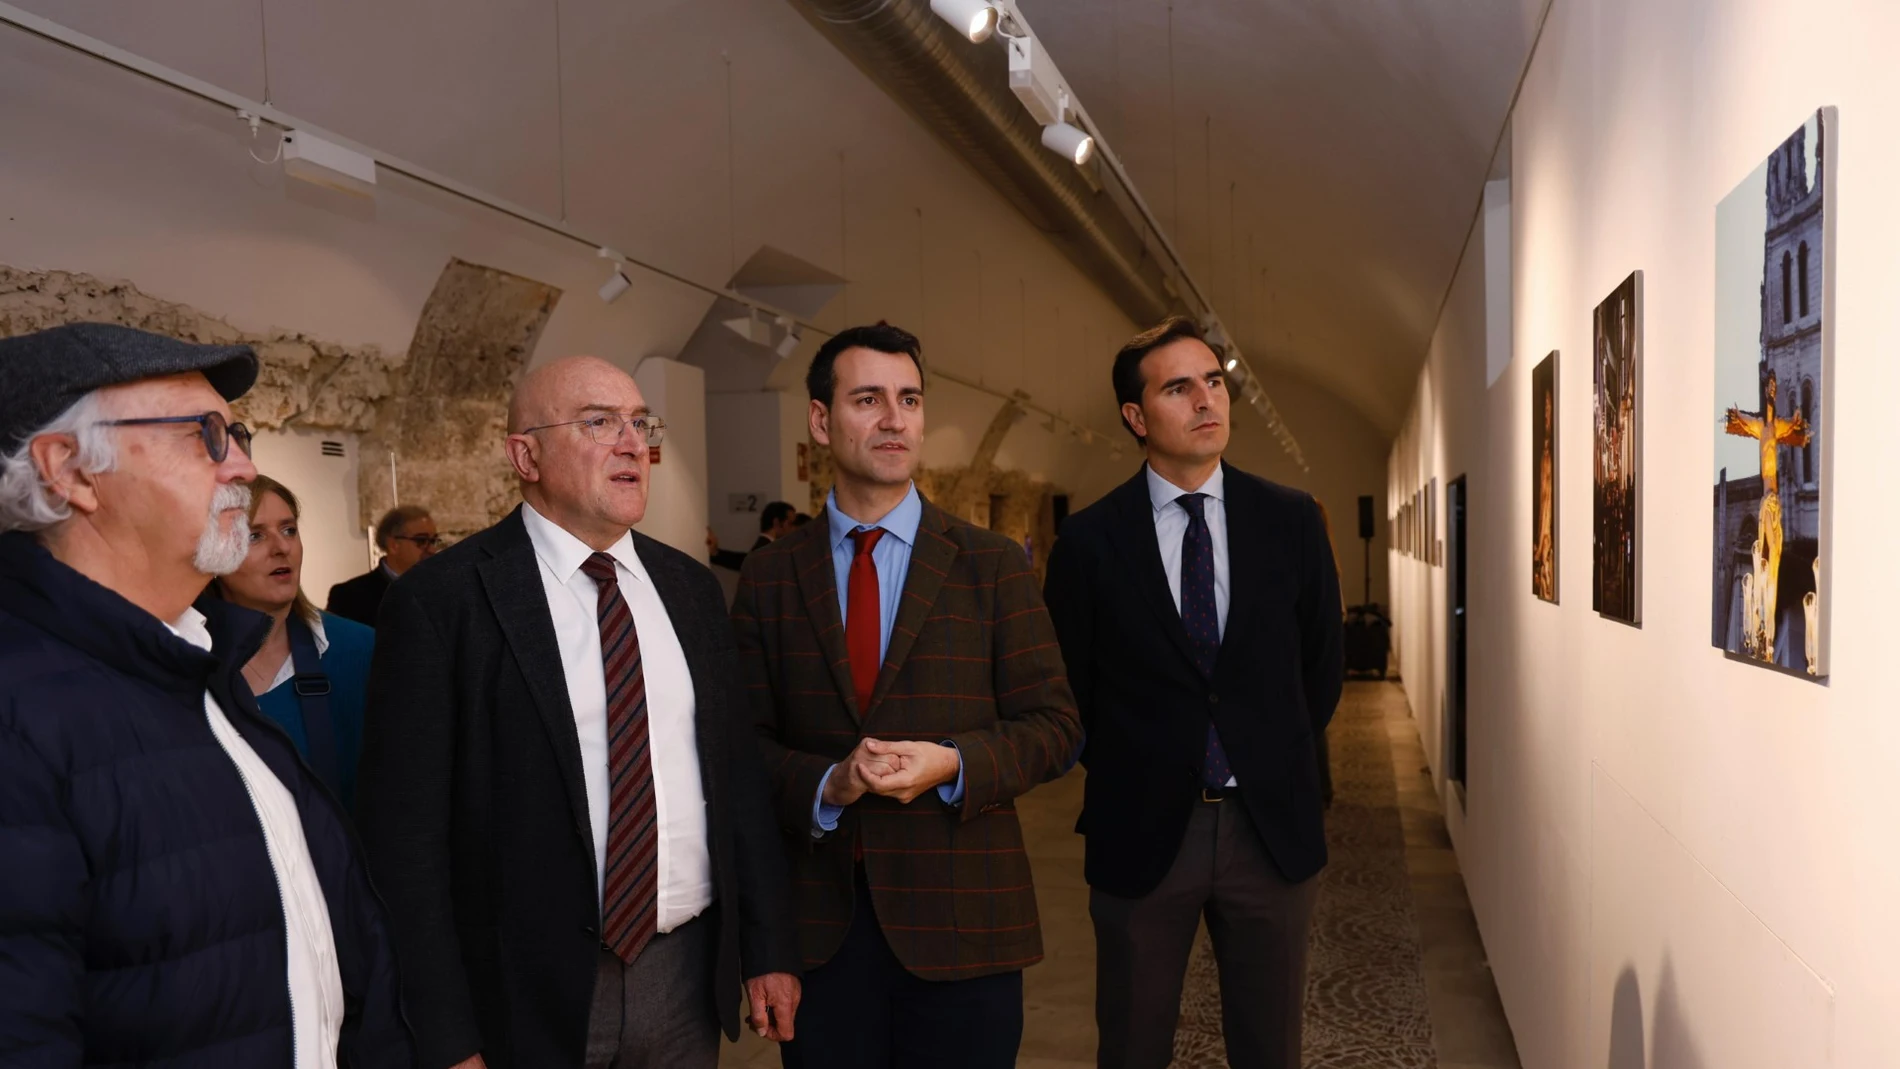 Los alcaldes Jesús Julio Carnero, David Esteban y Guzmán Gómez presentan la exposición